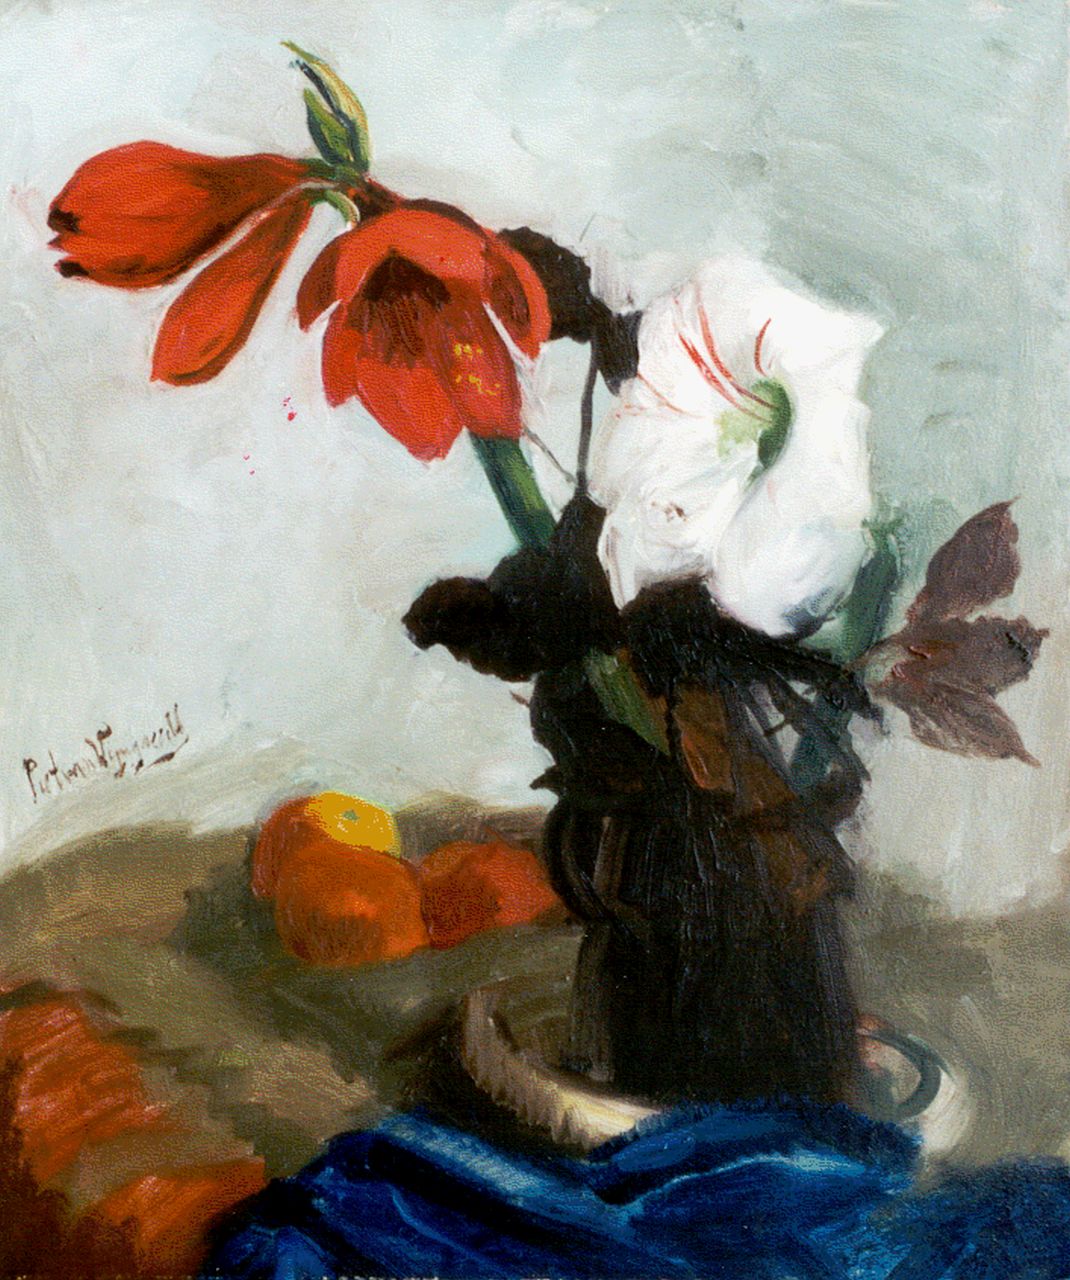 Wijngaerdt P.T. van | Petrus Theodorus 'Piet' van Wijngaerdt, Rode en witte amaryllis, olieverf op doek 80,2 x 67,2 cm, gesigneerd links van het midden